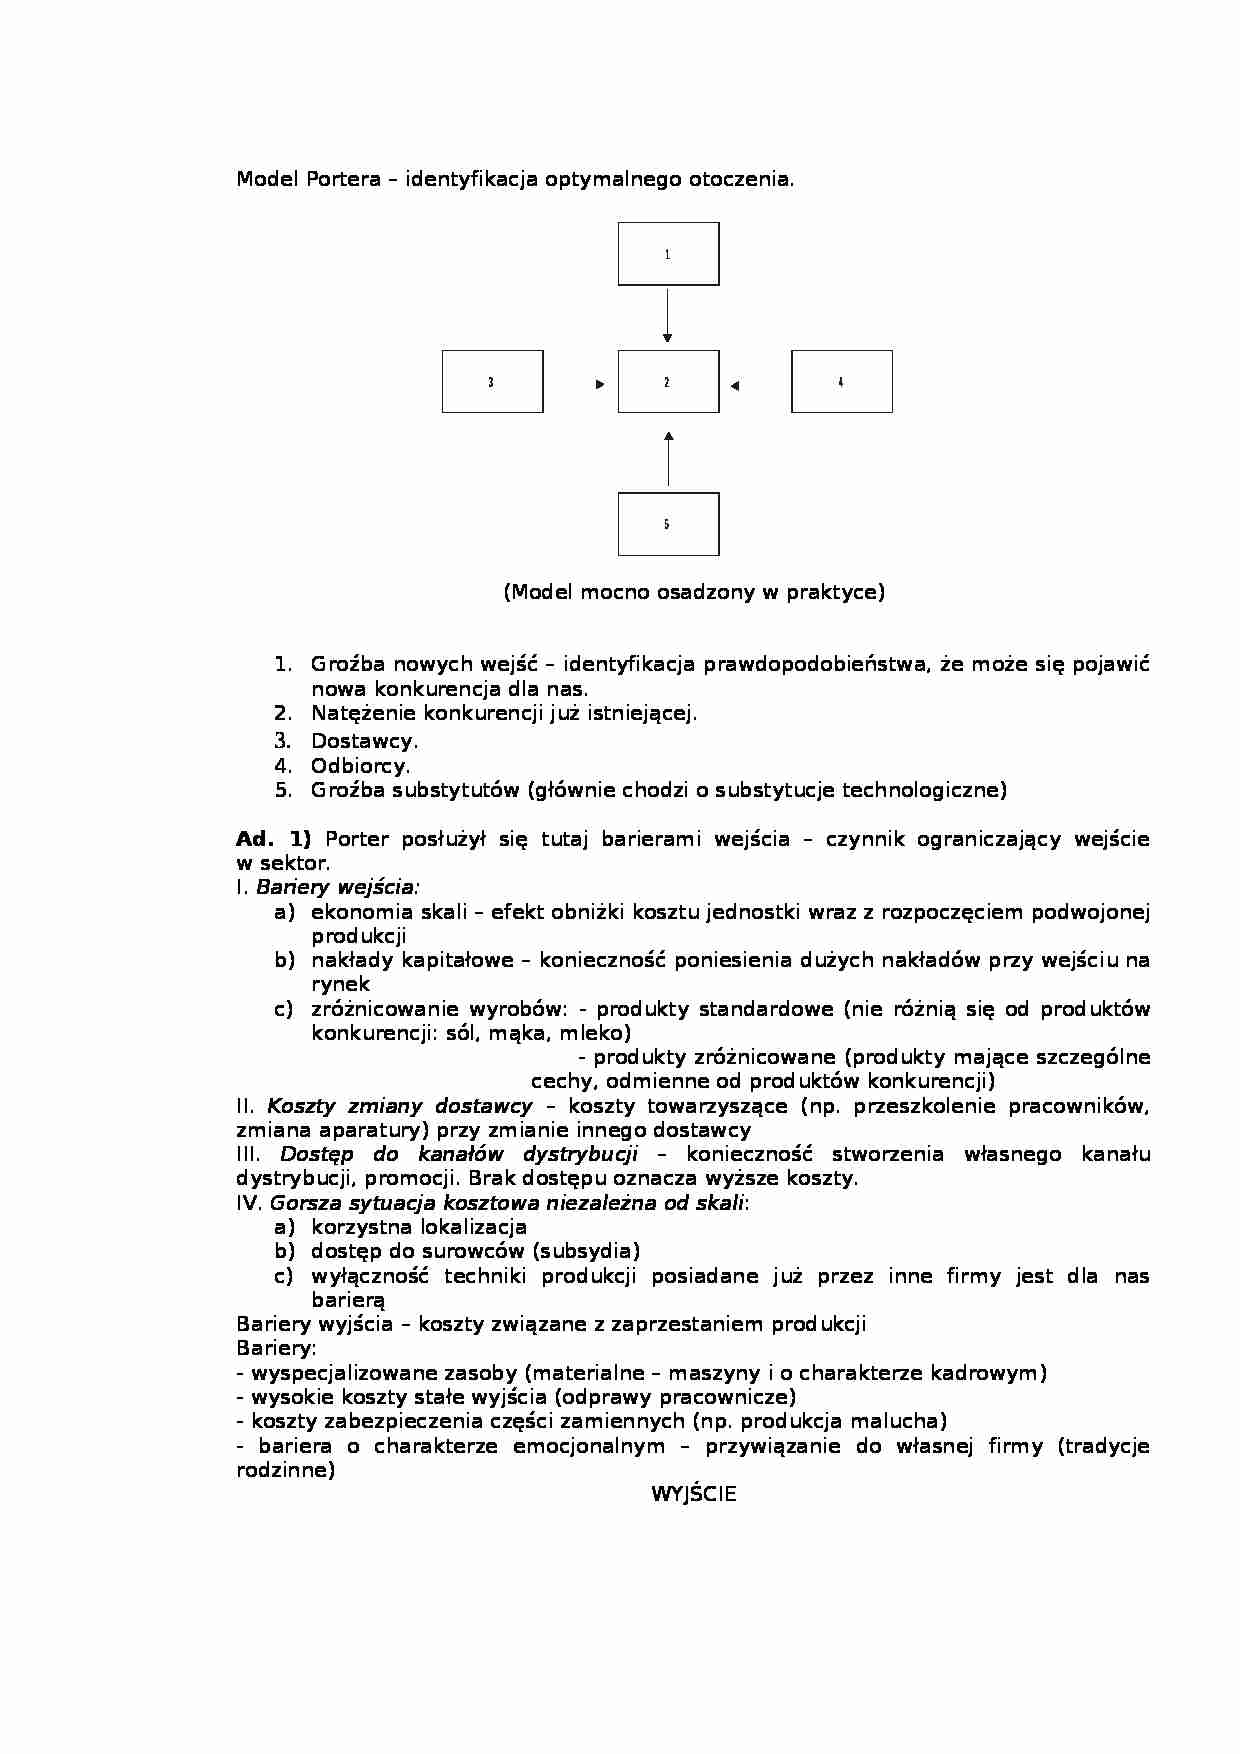 Model Porter - identyfikacja optymalnego otoczenia - strona 1